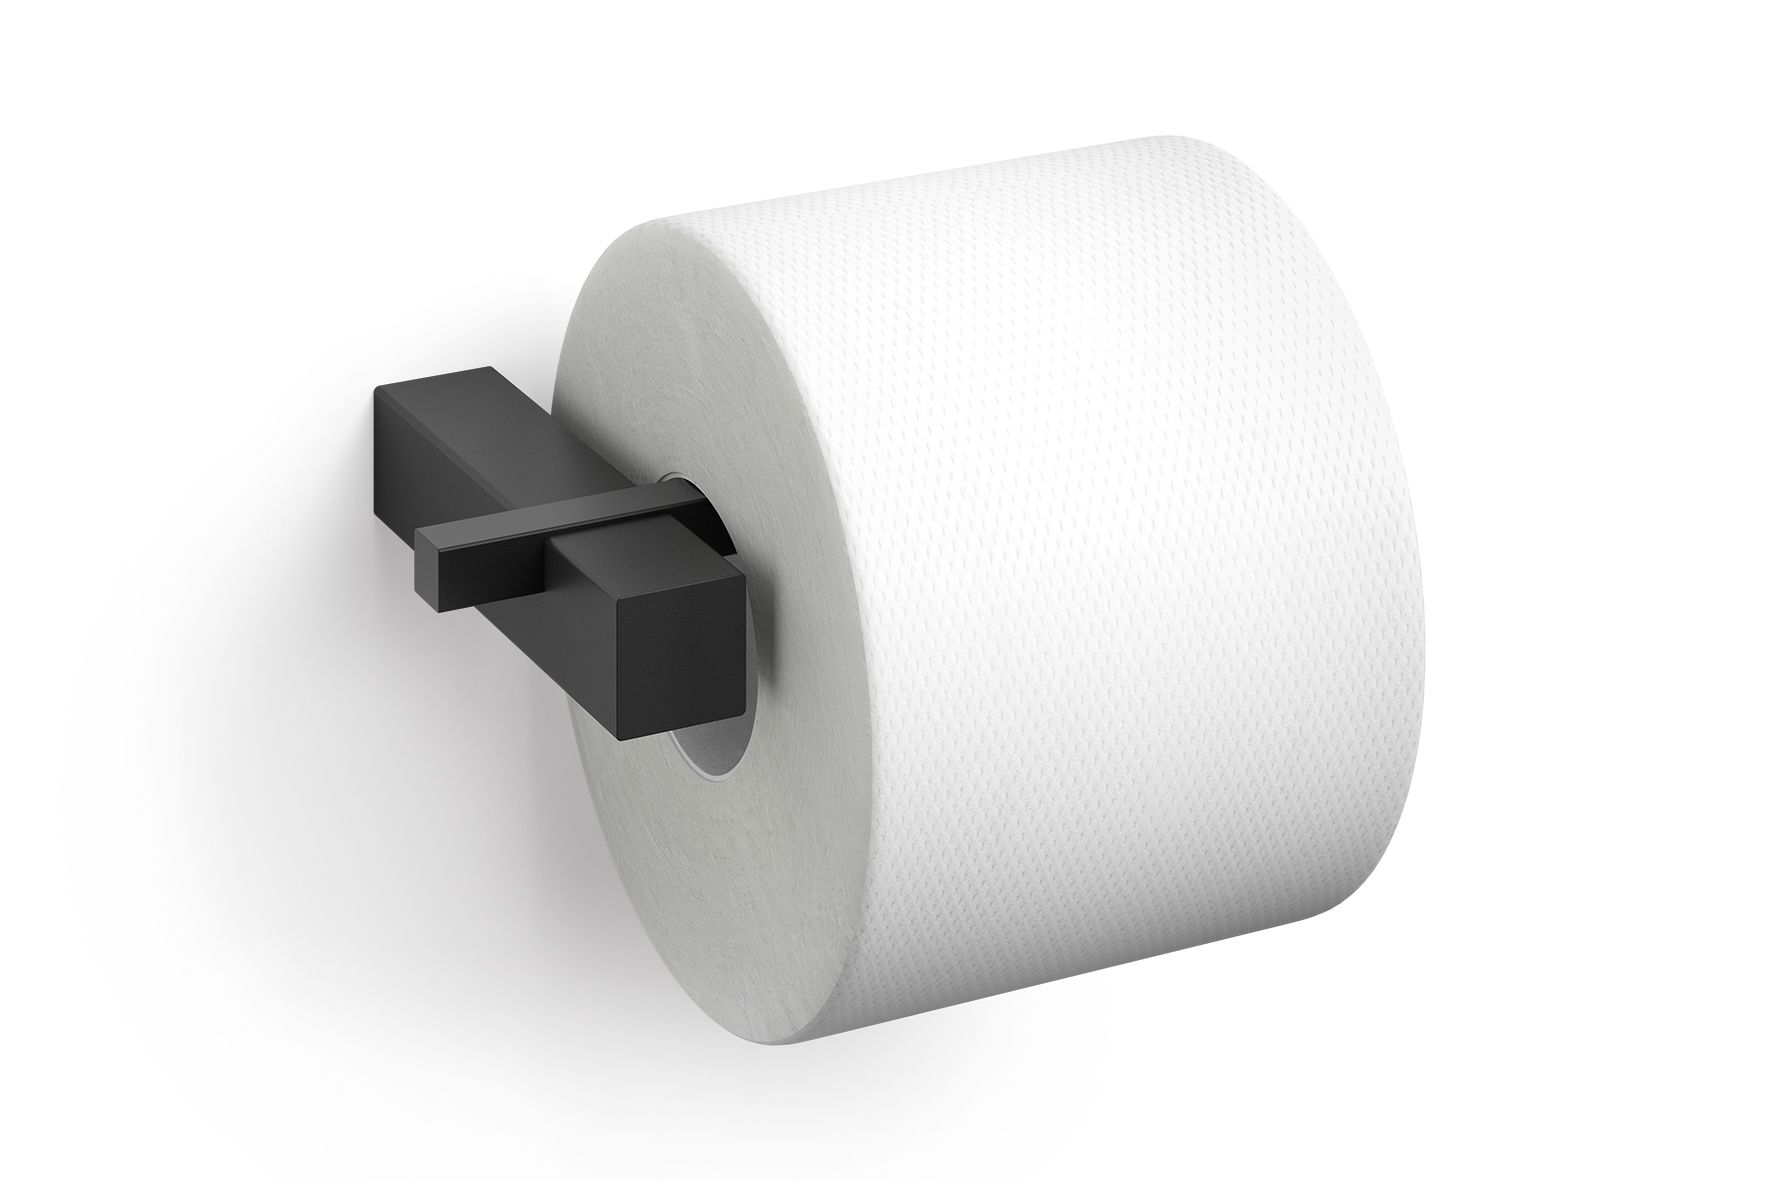 Porte-rouleau de papier toilette noir